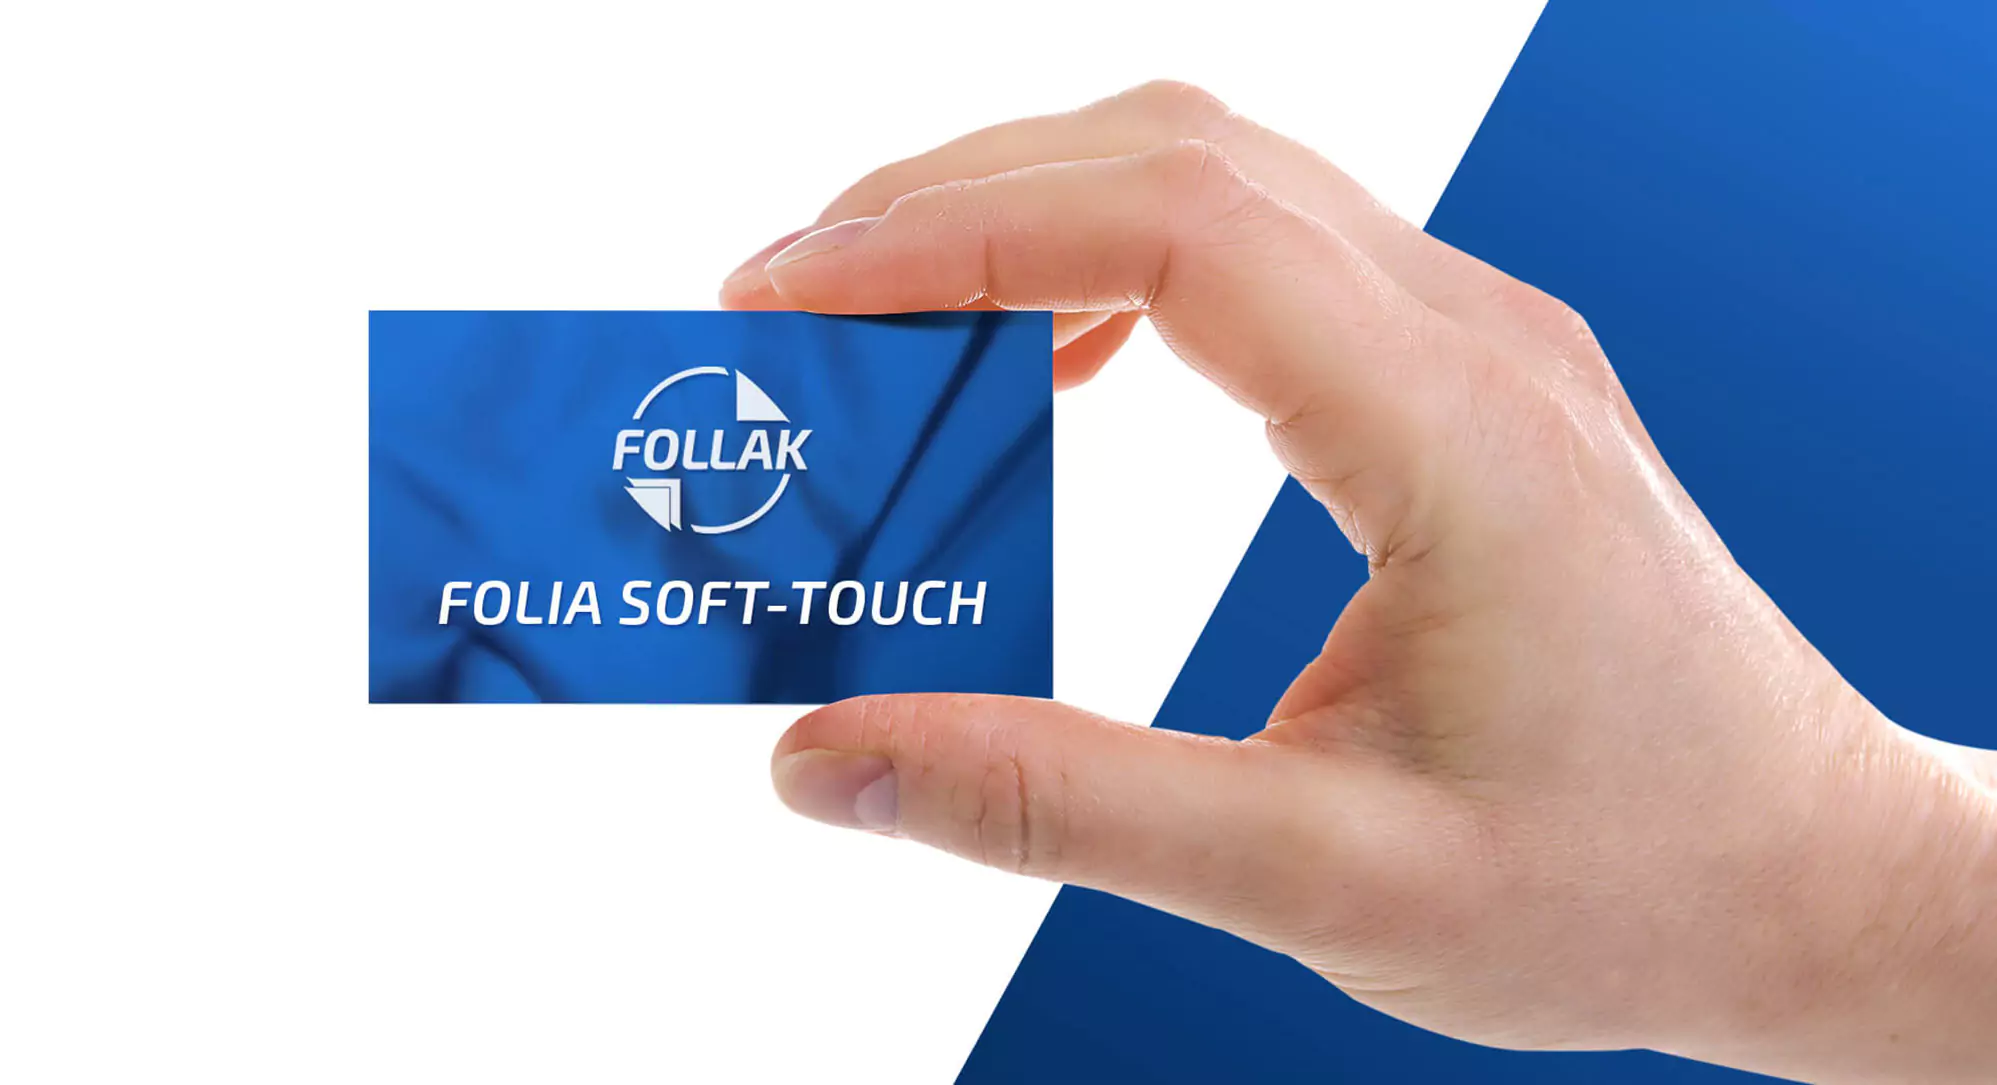 Folia soft-touch, sprawdź co warto o niej wiedzieć